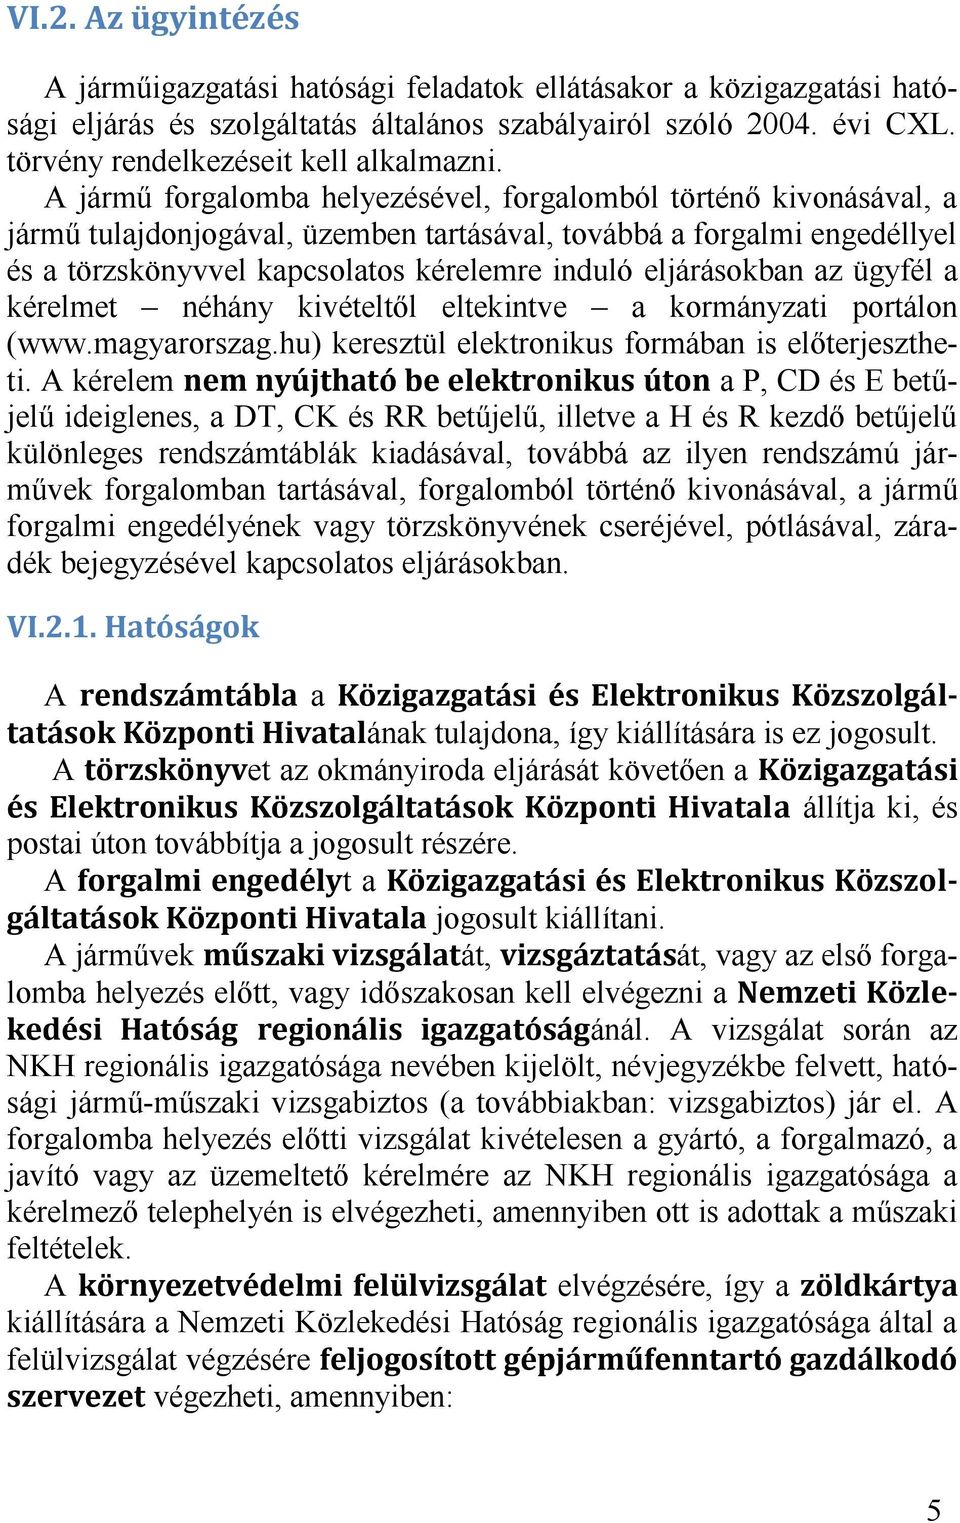 eljárásokban az ügyfél a kérelmet néhány kivételtől eltekintve a kormányzati portálon (www.magyarorszag.hu) keresztül elektronikus formában is előterjesztheti.